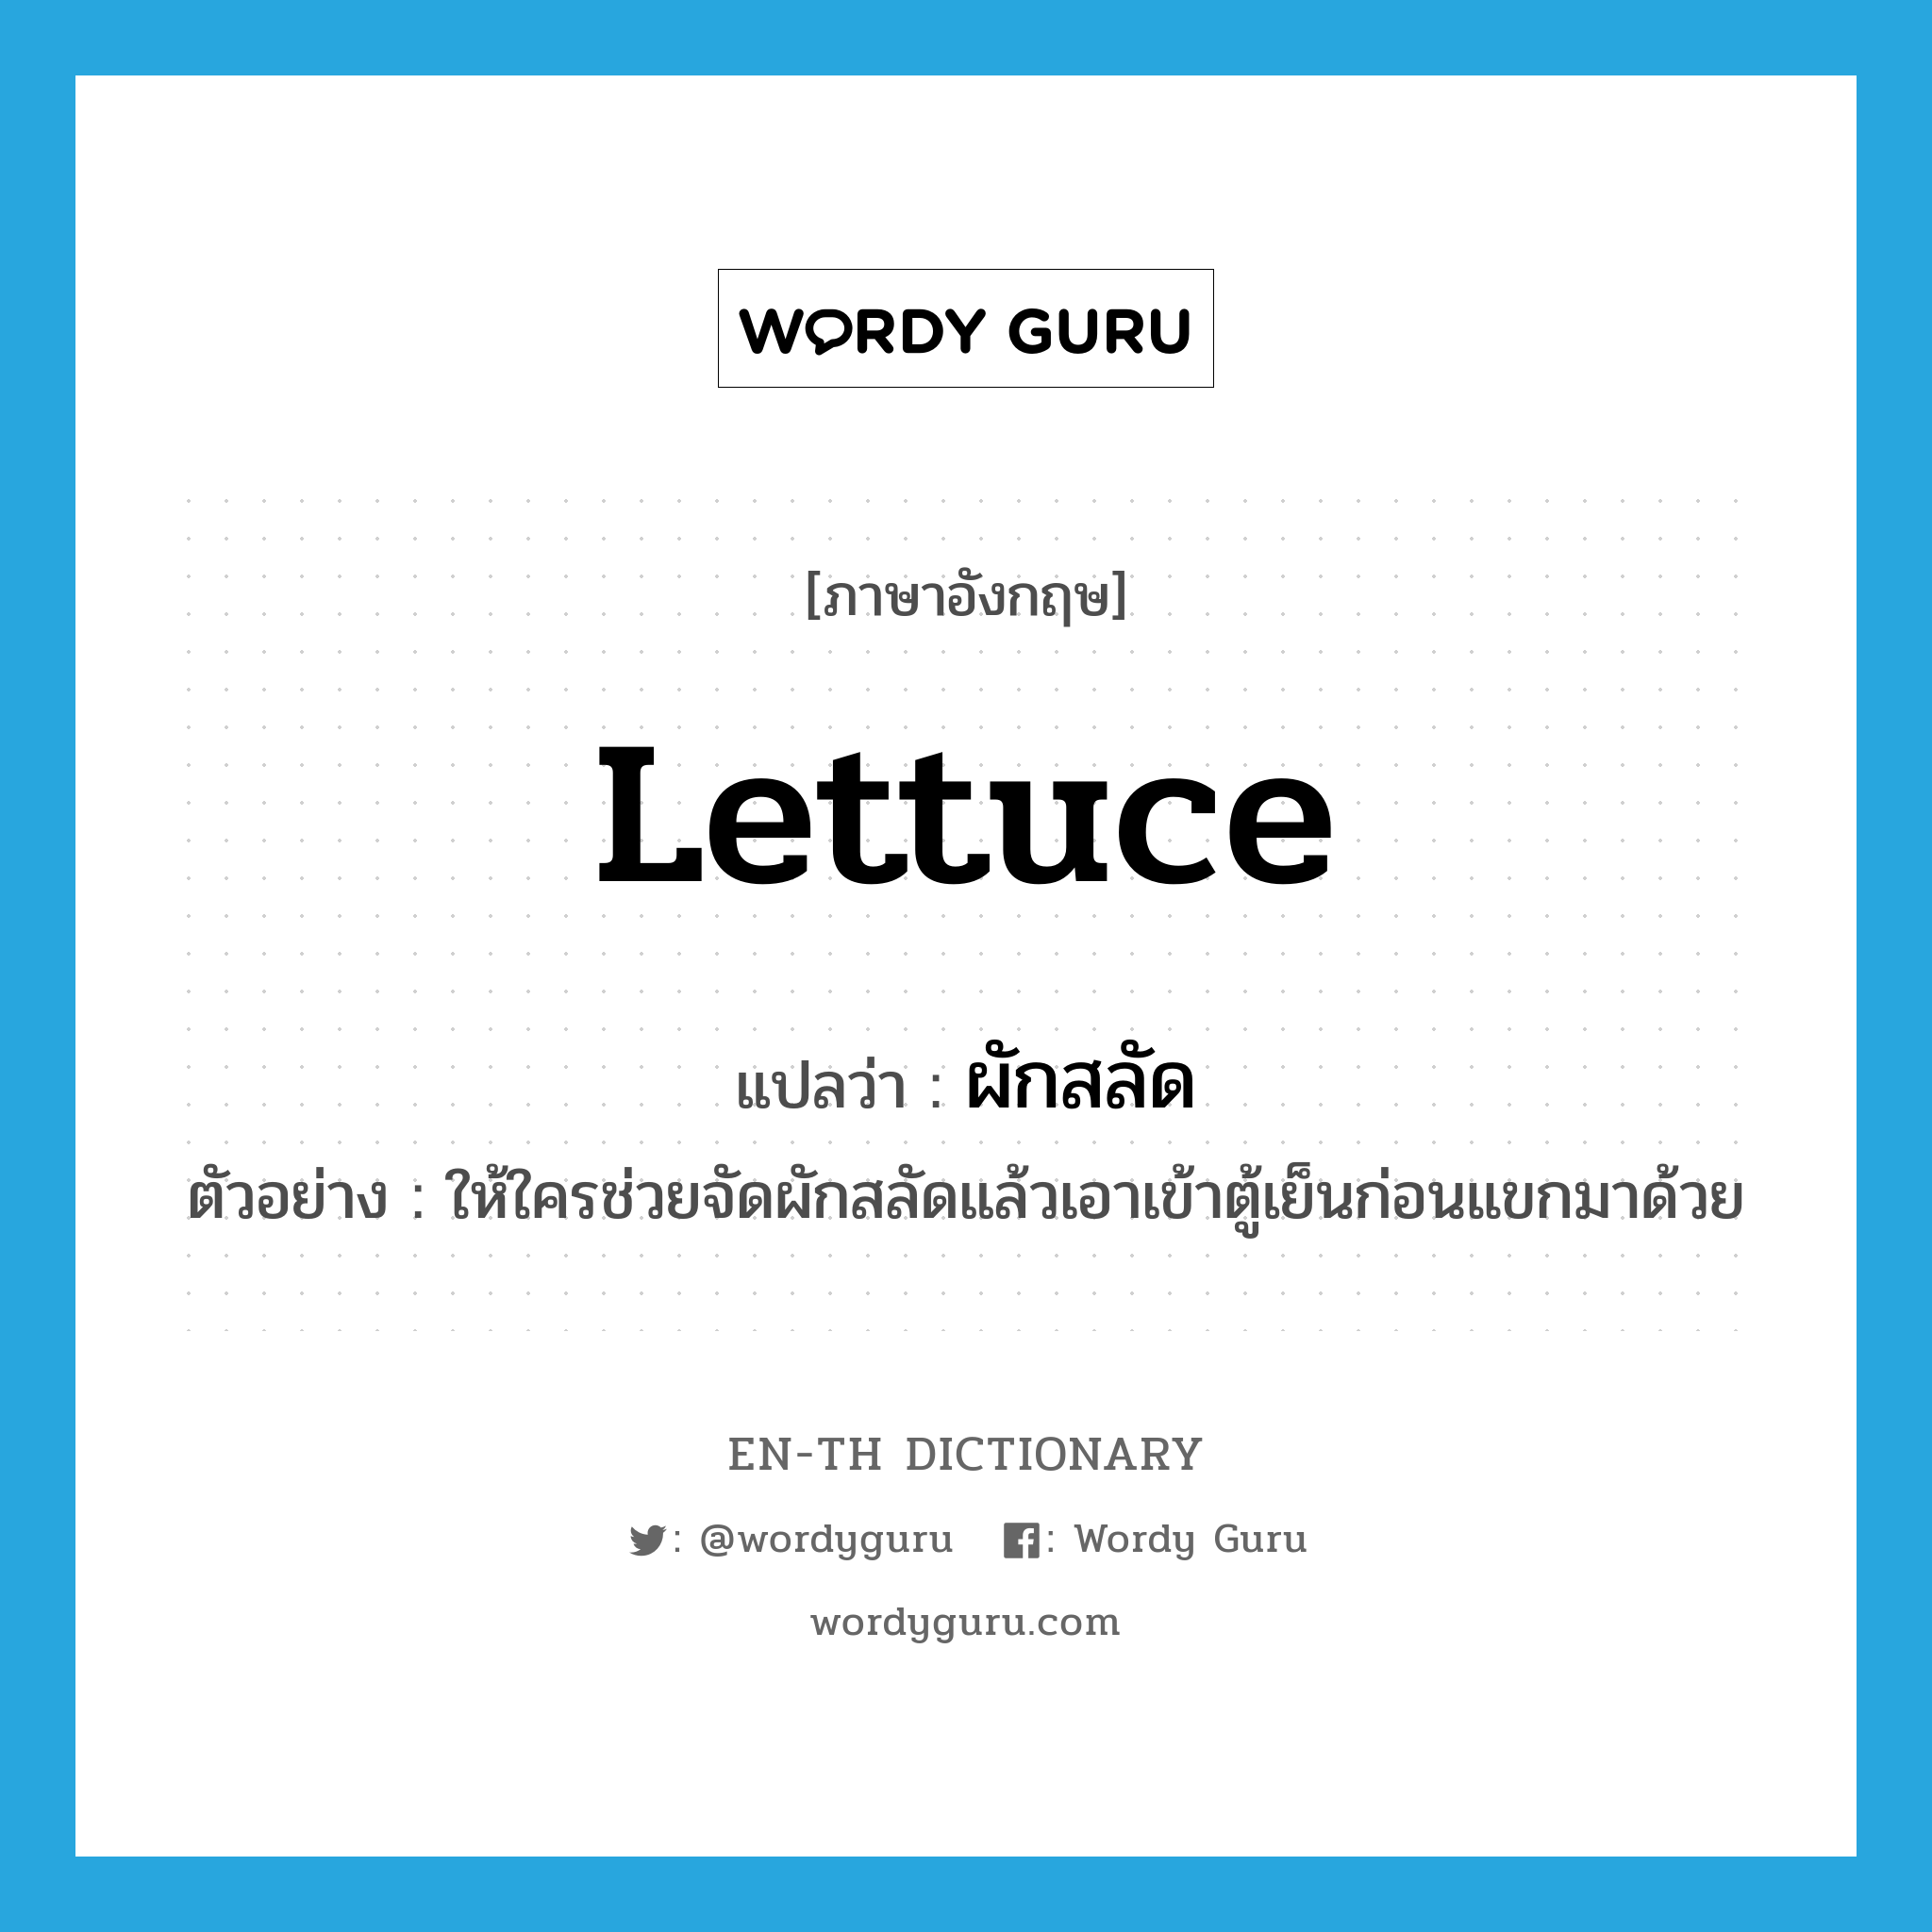 lettuce แปลว่า?, คำศัพท์ภาษาอังกฤษ lettuce แปลว่า ผักสลัด ประเภท N ตัวอย่าง ให้ใครช่วยจัดผักสลัดแล้วเอาเข้าตู้เย็นก่อนแขกมาด้วย หมวด N